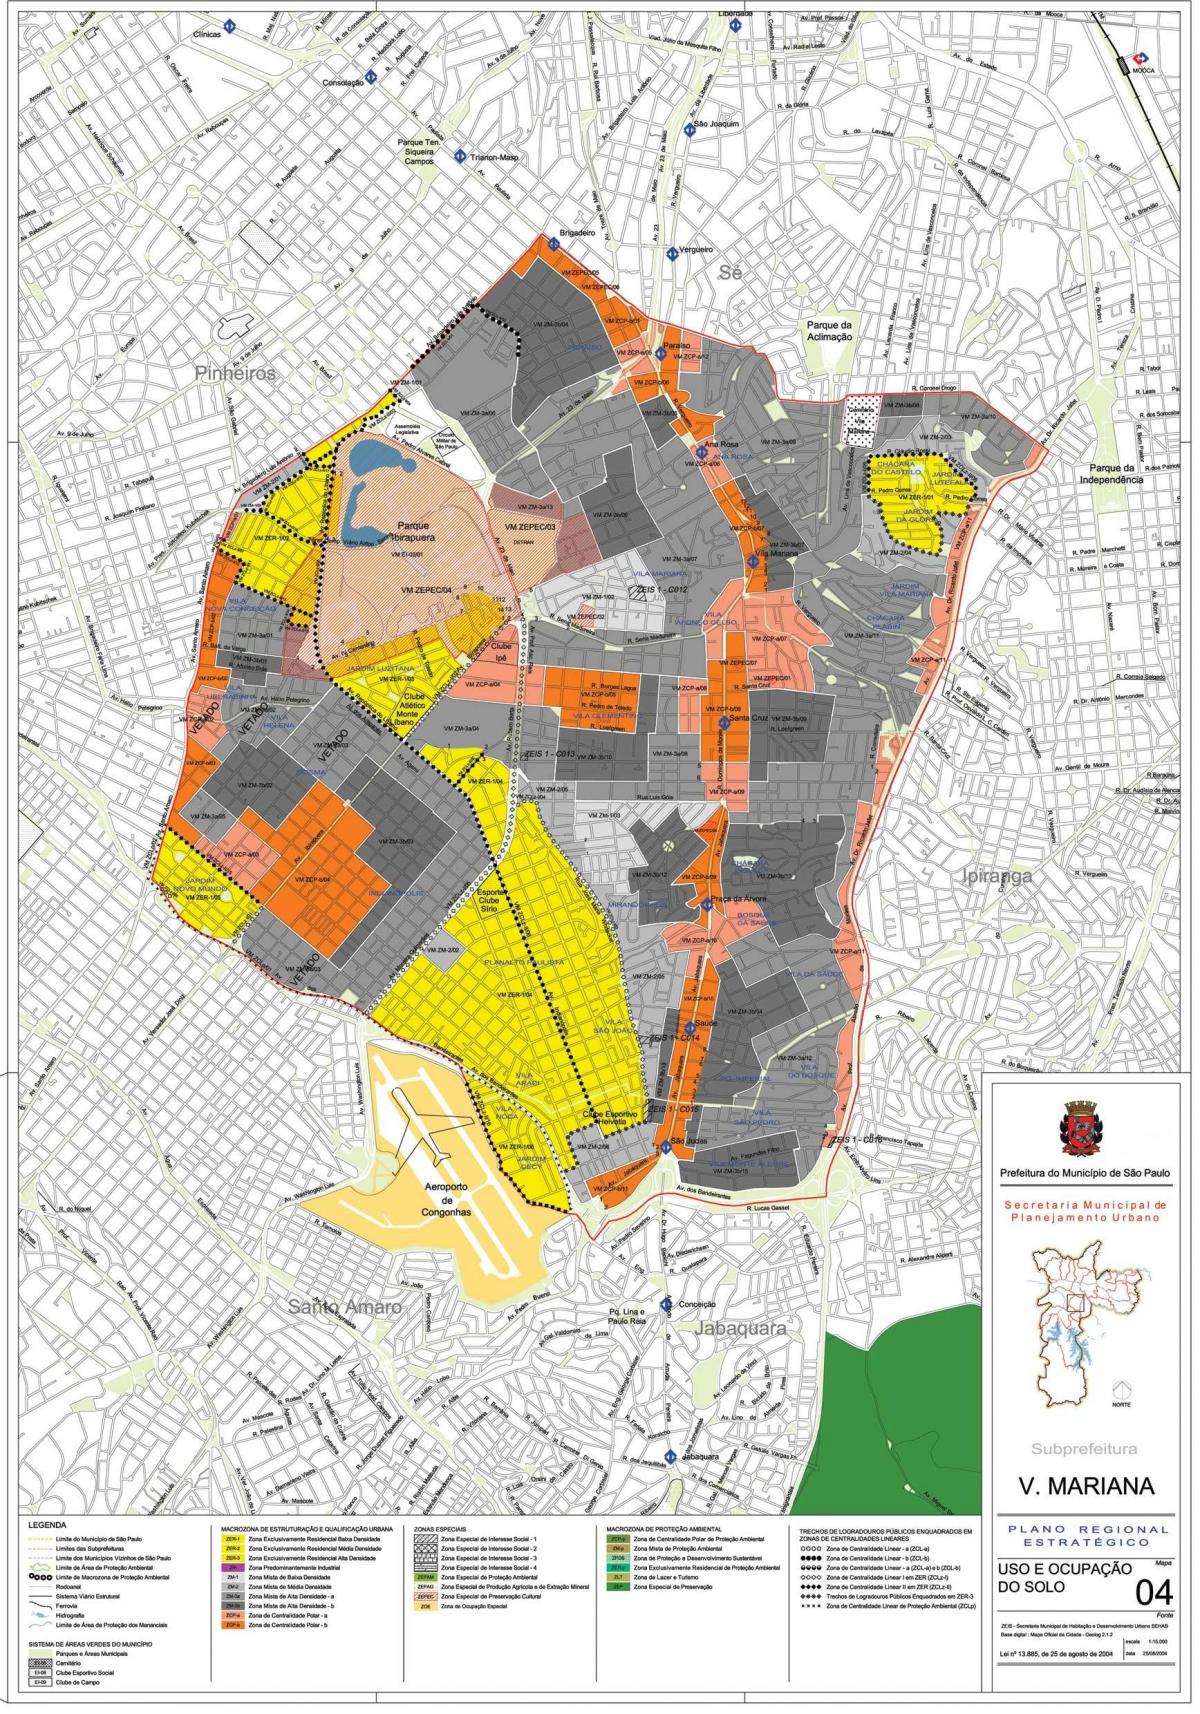 Zemljevid Vila Marianski Sao Paulo - Poklic tal